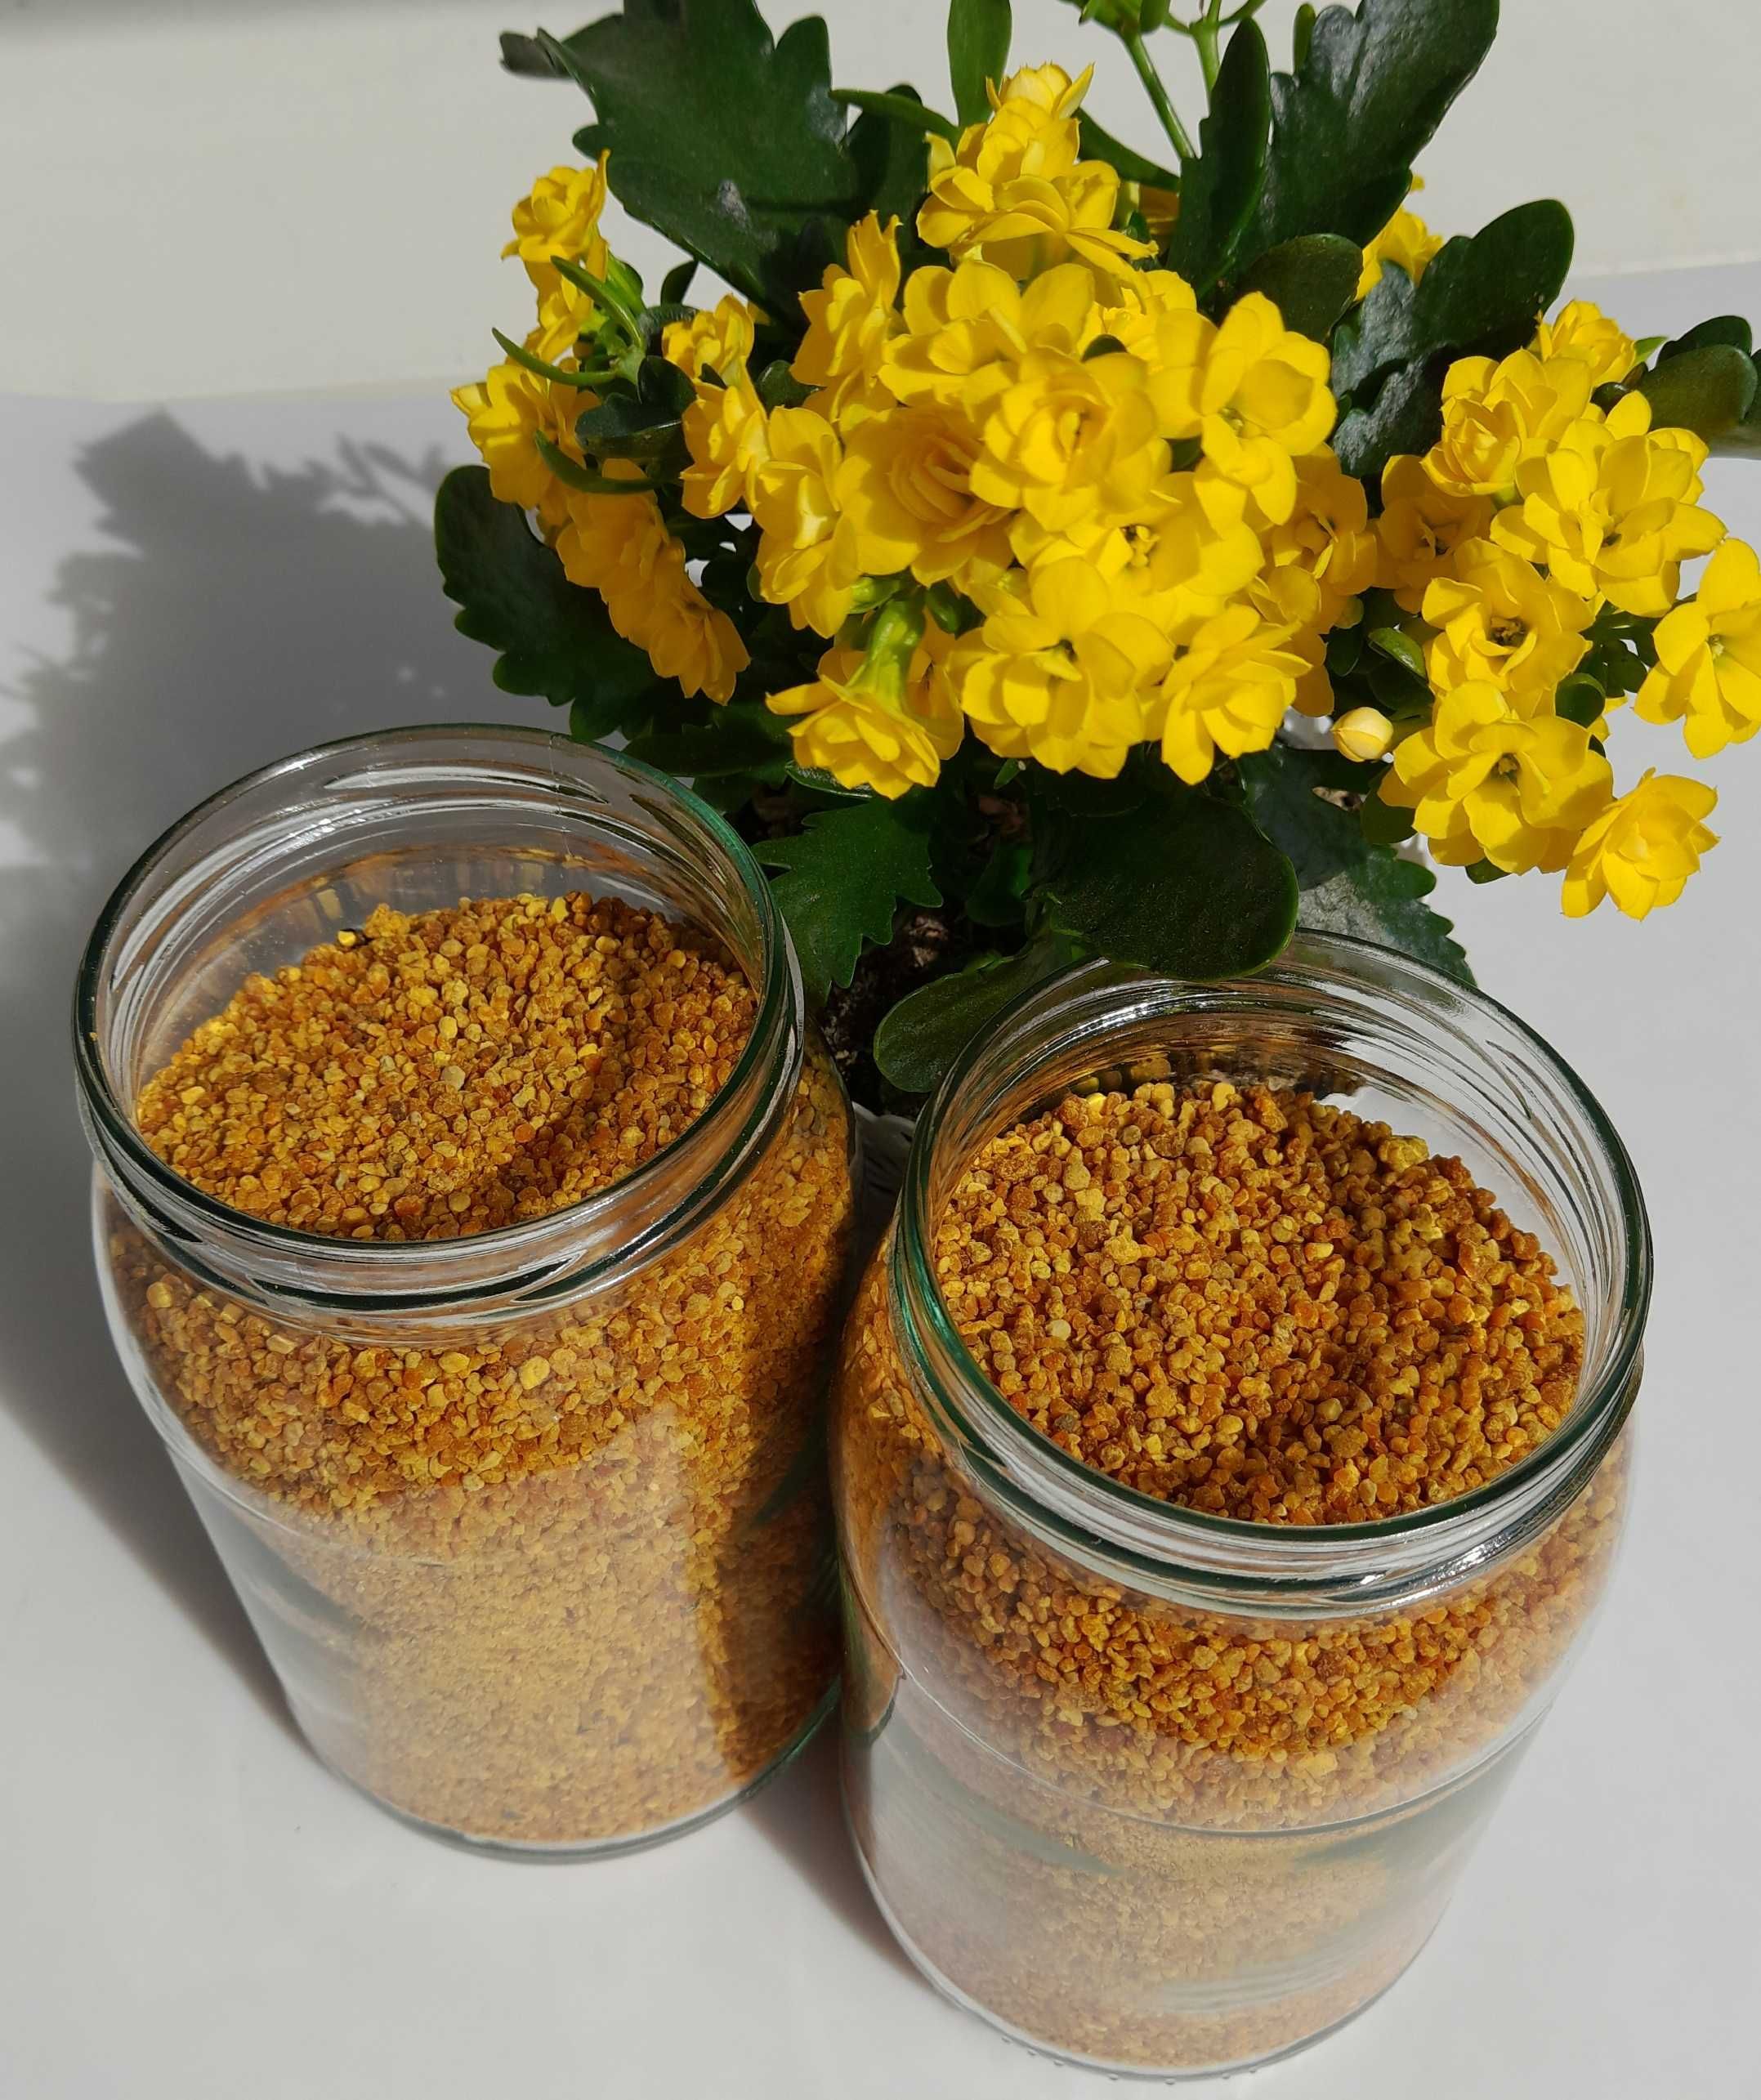 Pyłek pszczeli kwiatowy 0,5 kg promocyjna cena dobrze wymrożony wysusz